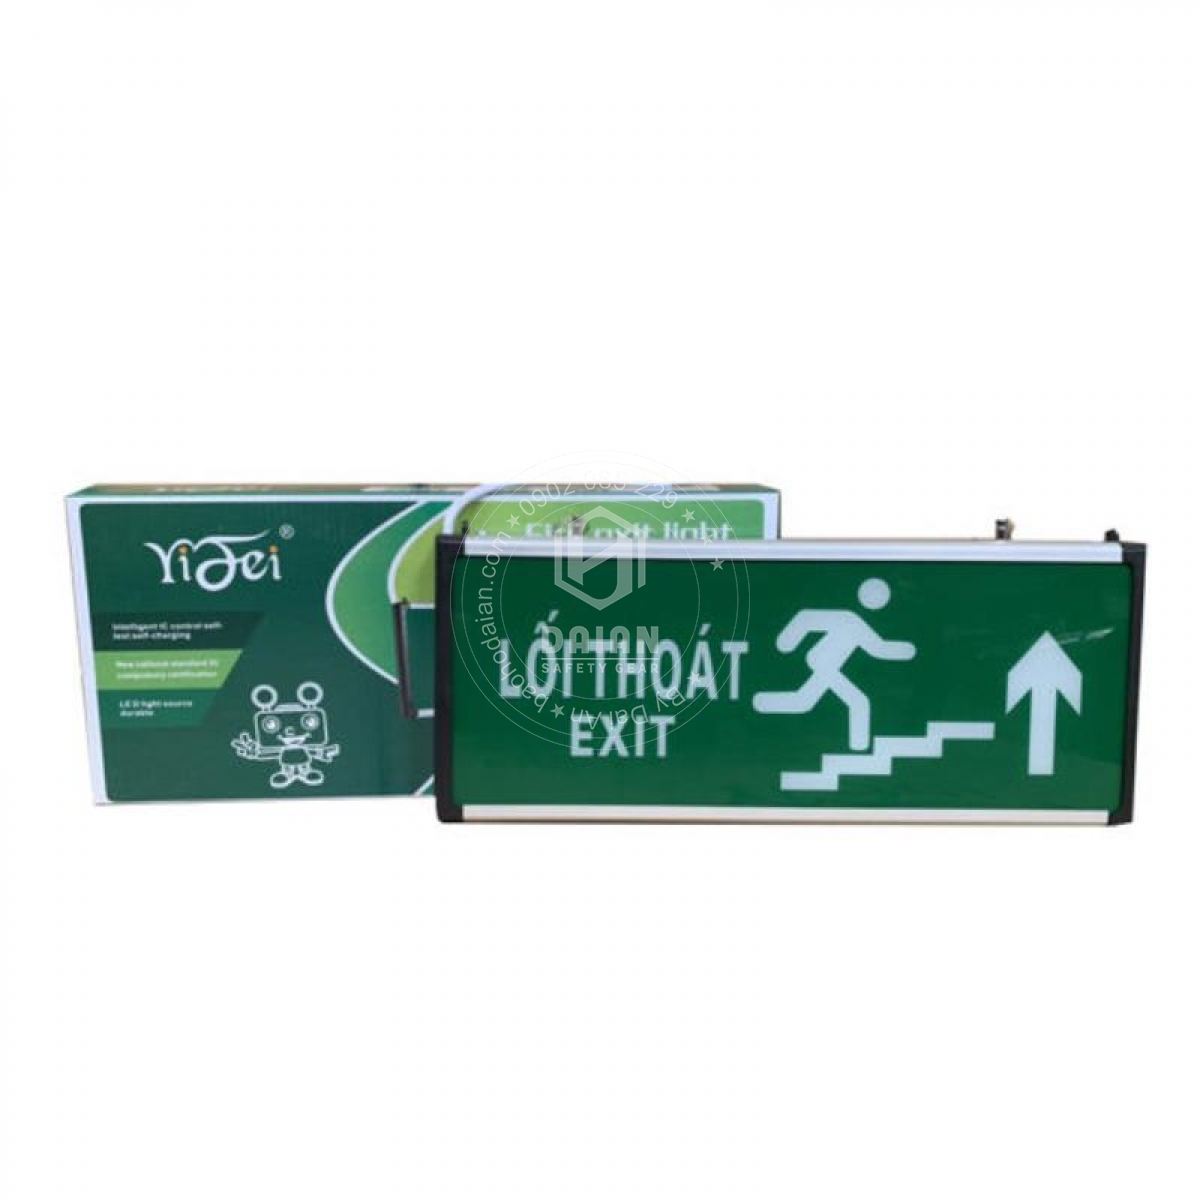 den-exit-thoat-hiem-yf1018-chi-len